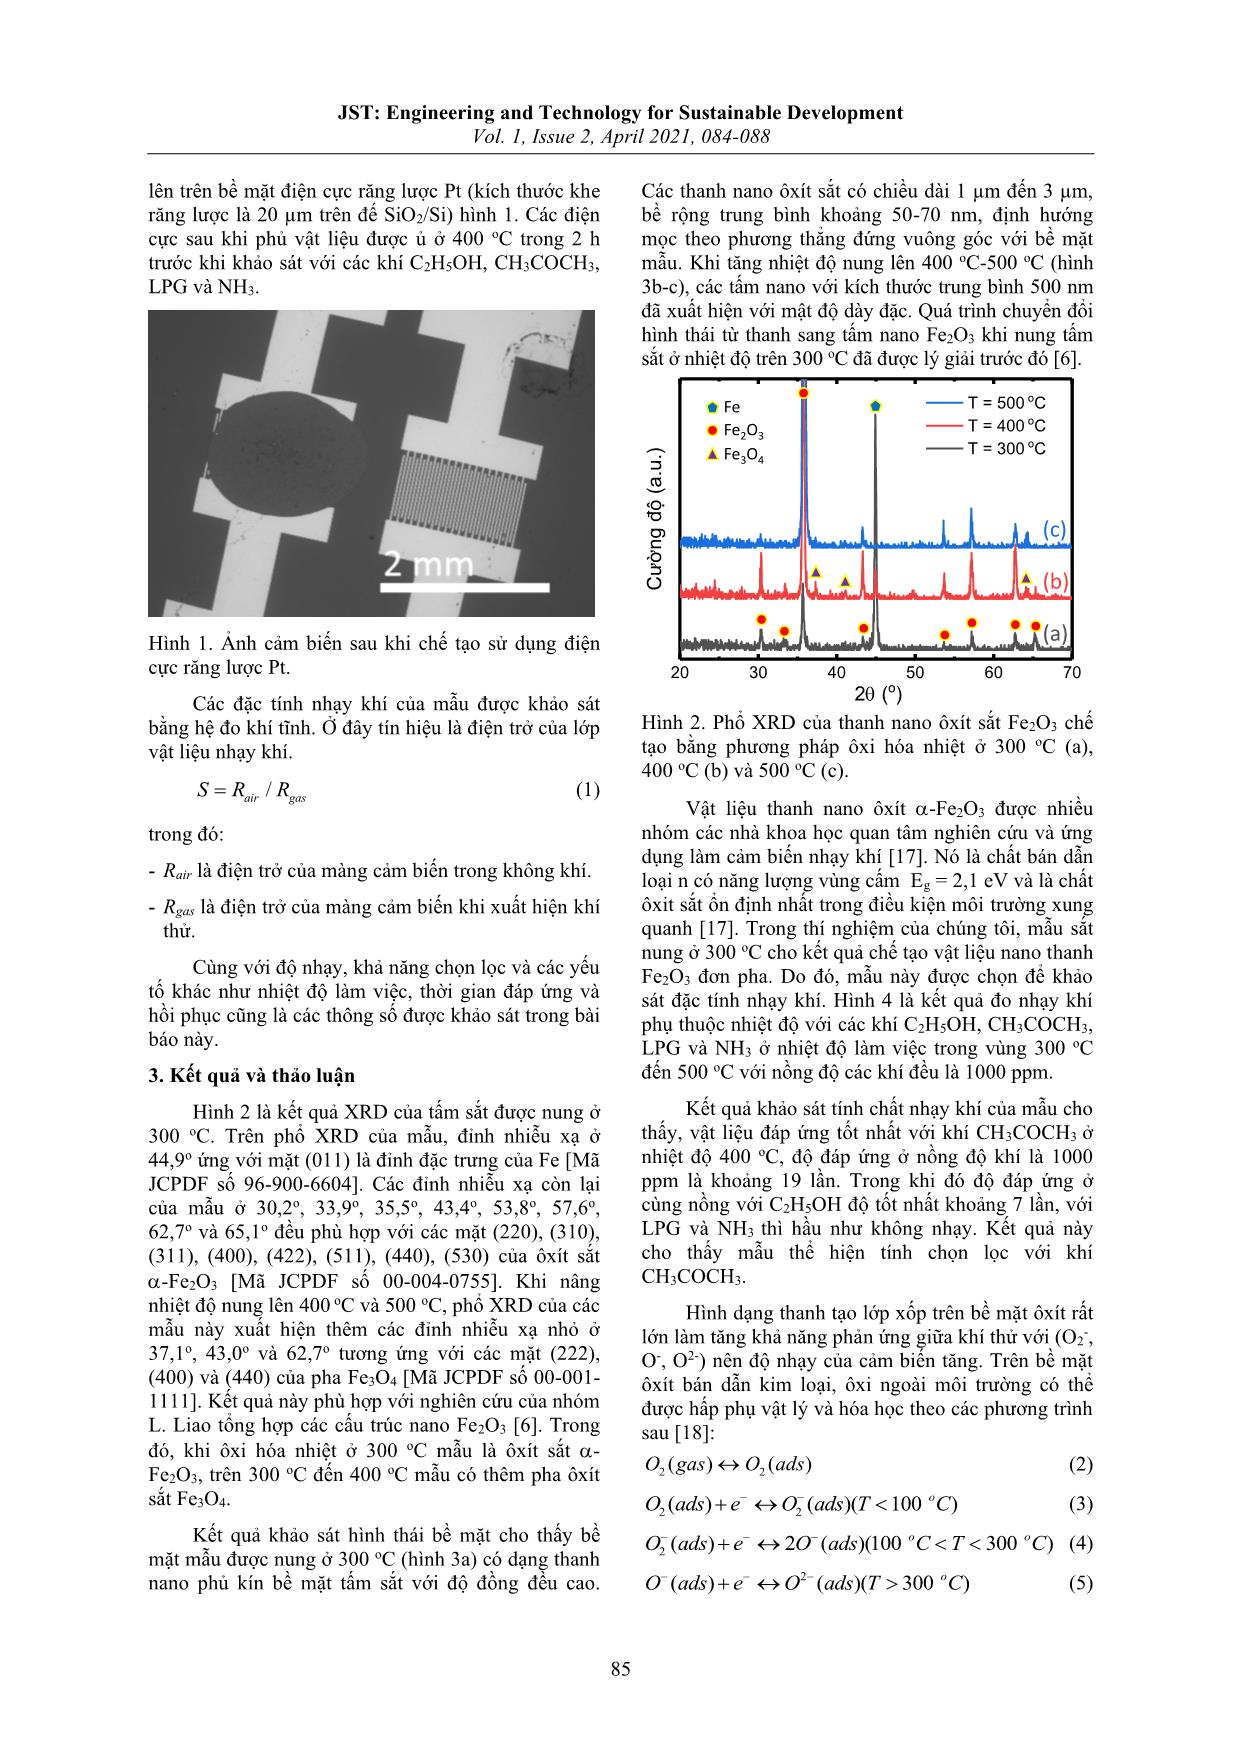 Tổng hợp bằng phương pháp ôxi hóa nhiệt và khảo sát đặc tính nhạy khí của thanh nano Fe₂O₃ trang 2